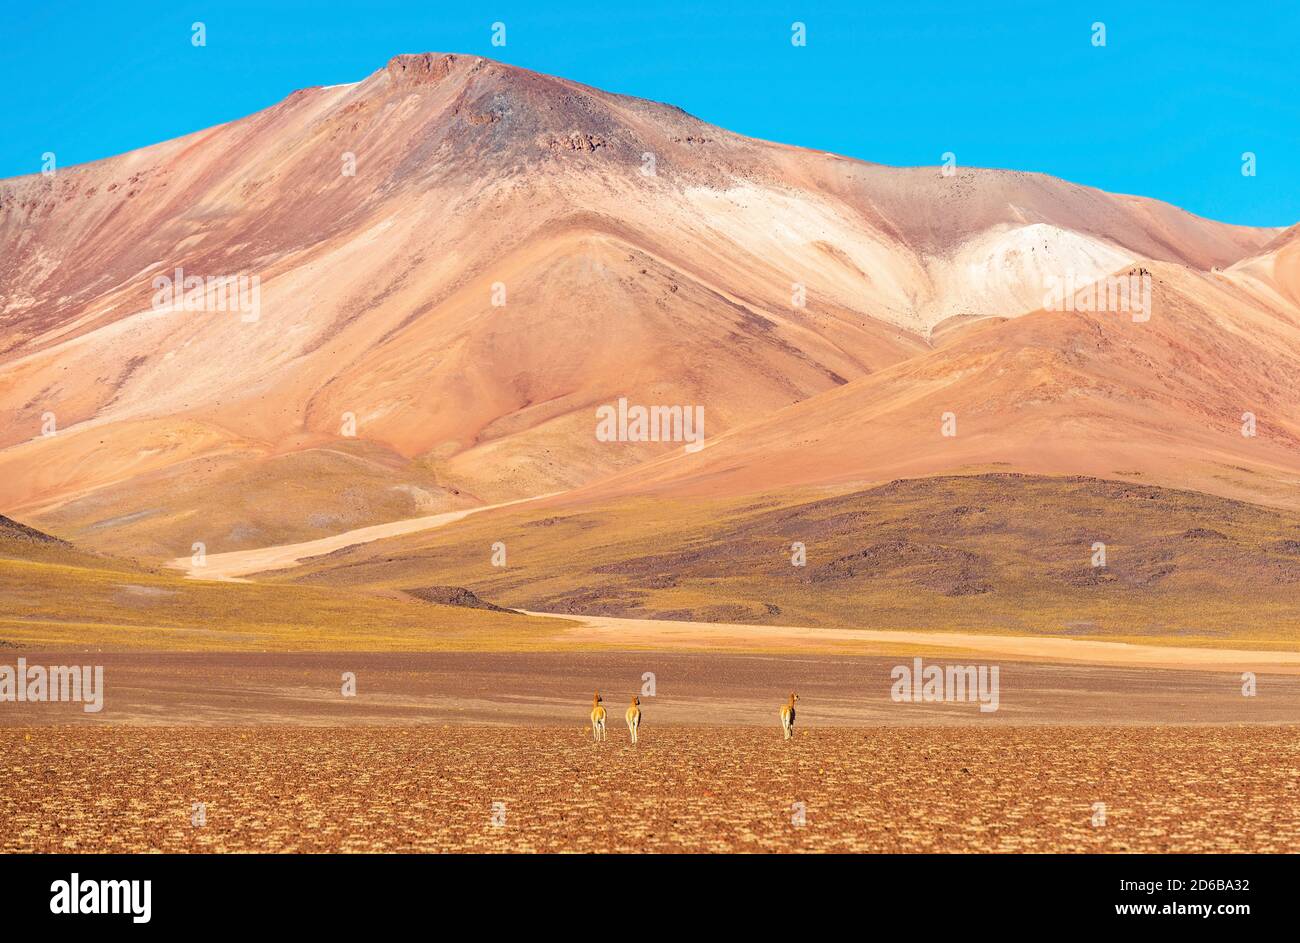 Drei vicuna (Vicugna vicugna) auf der Suche nach Nahrung in der ariden Anden altiplano, Uyuni Salz flache Wüstenregion, Bolivien. Stockfoto